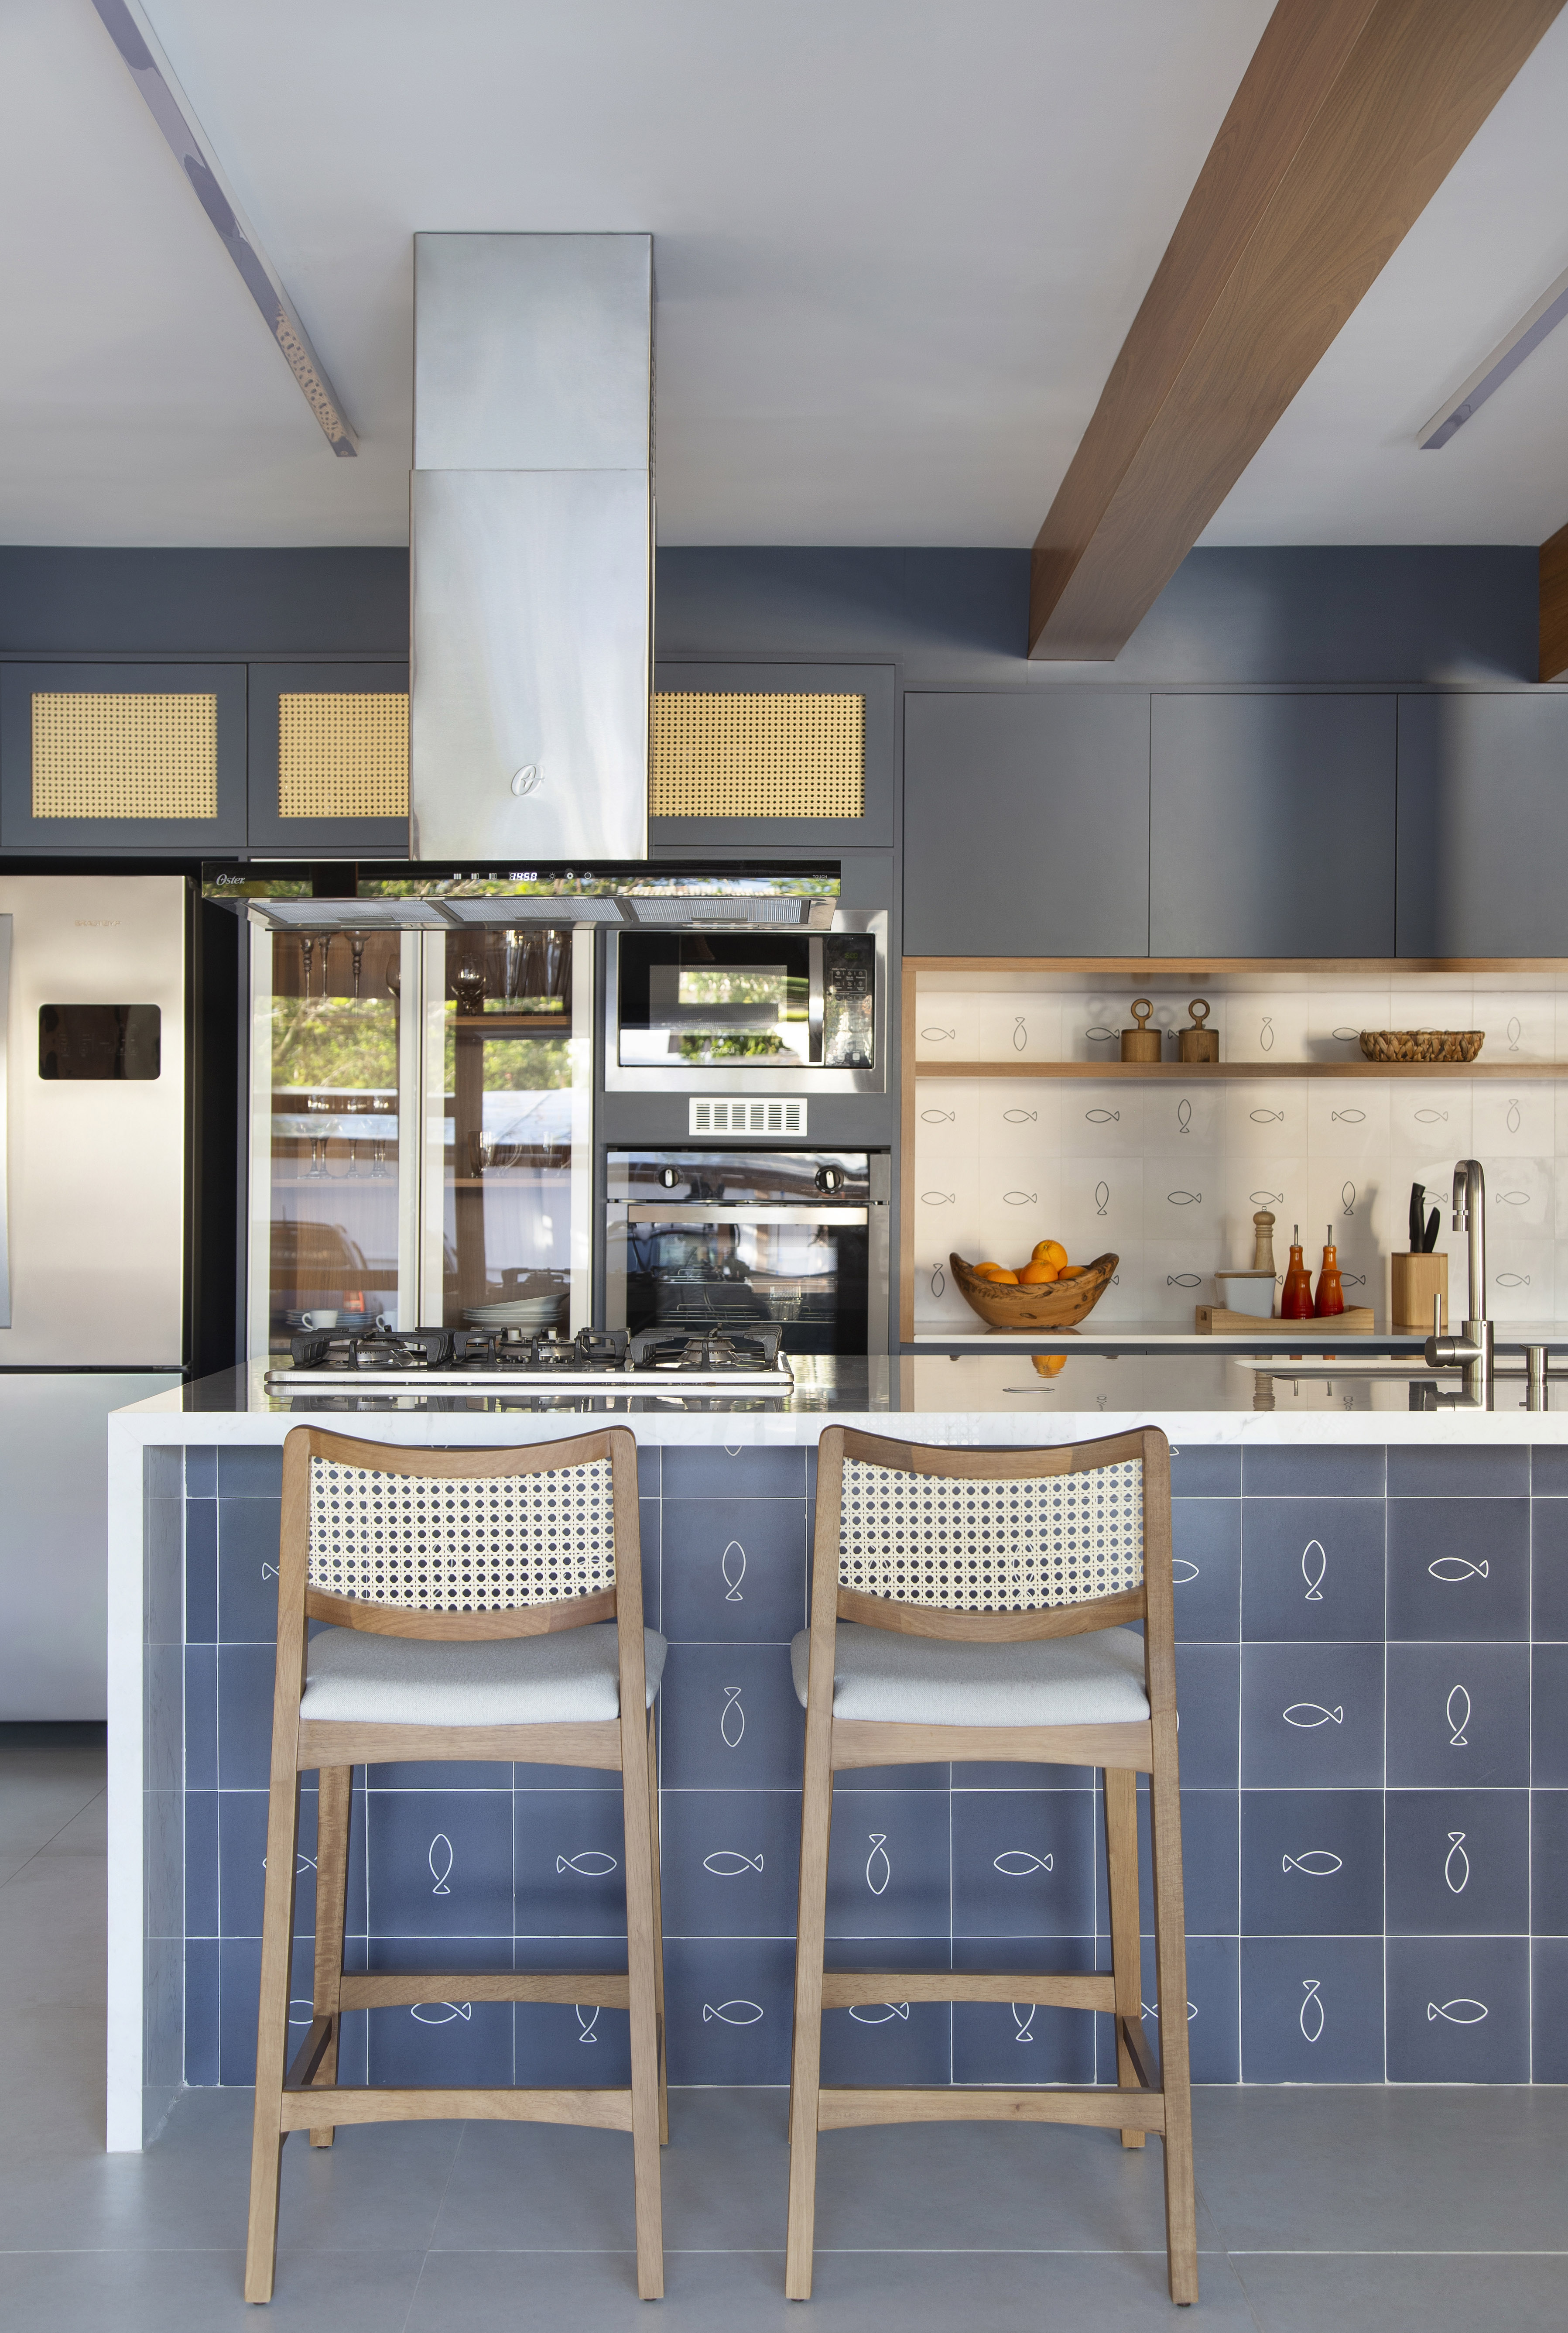 Ilha de cozinha revestida de azulejos com peixes é destaque nesta casa. Projeto de Travessa Arquitetura. Na foto, cozinha com marcenaria azul, ilha com azulejos e mármore.